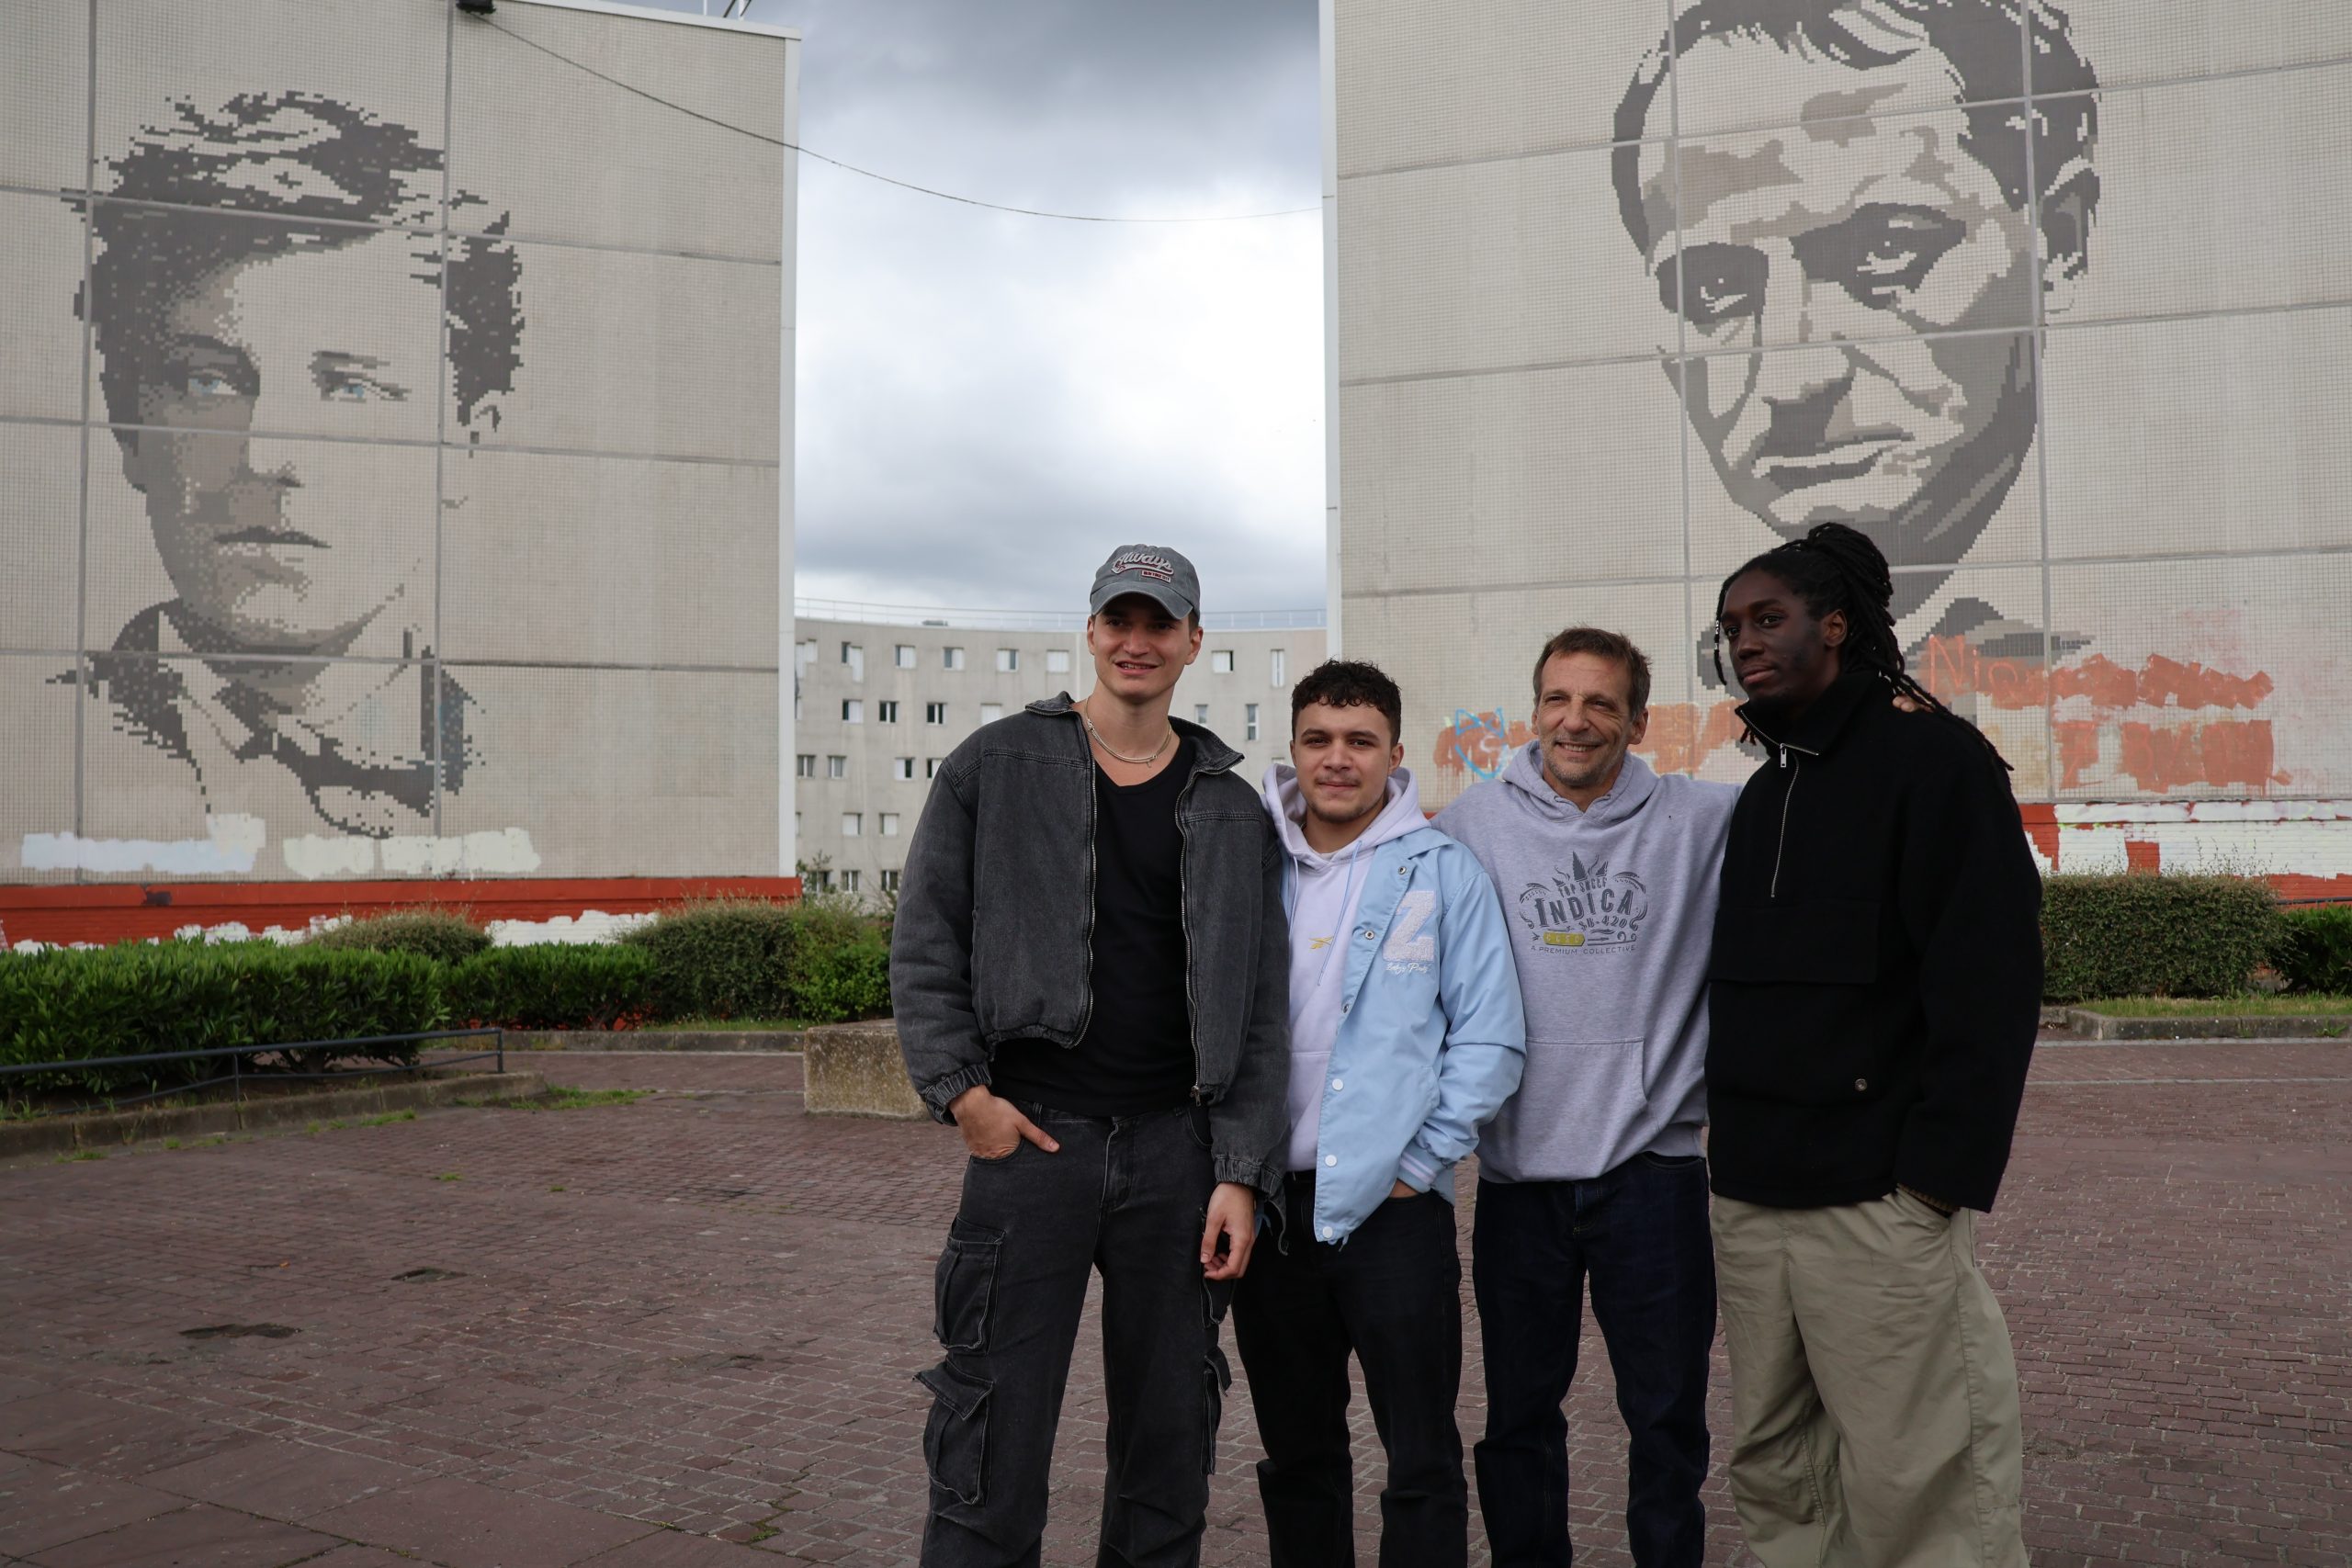 Après la séance de questions-réponses avec les collégiens, Mathieu Kassovitz, Alexander, Samy et Alivor sont allés se balader sur les anciens lieux de tournage de La Haine